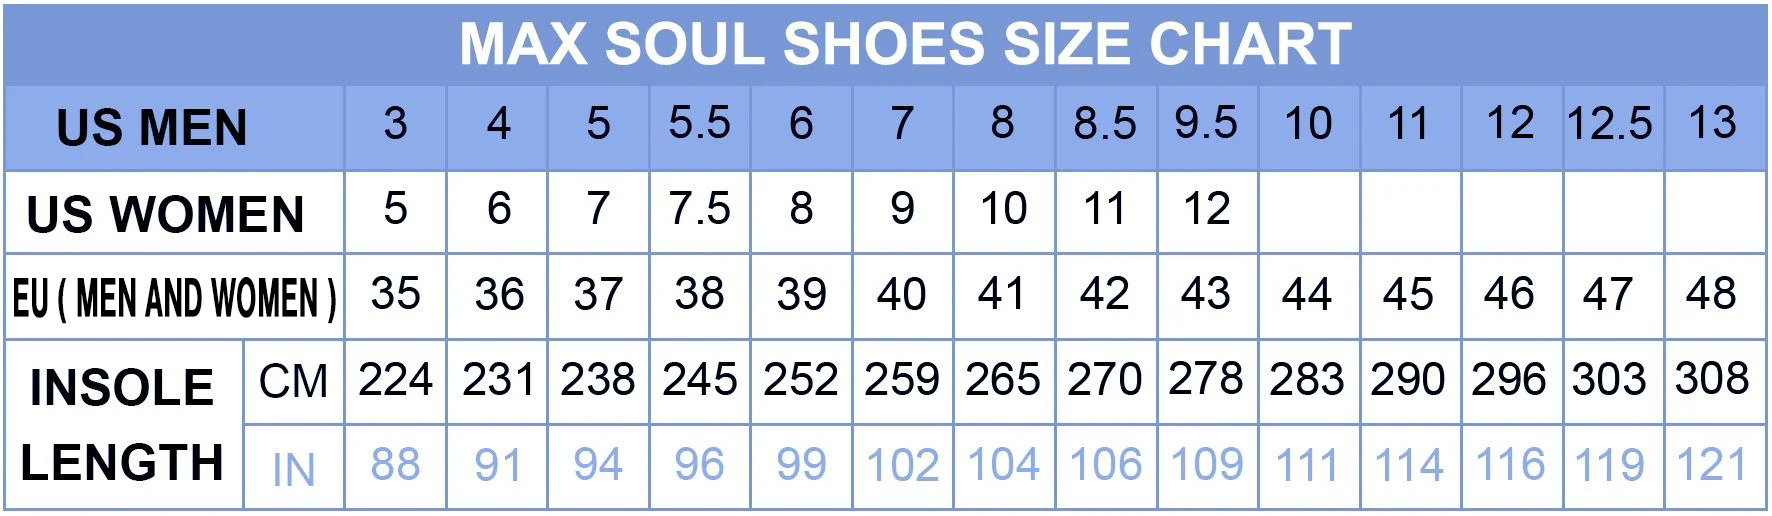 BEST Playskool Clunky Max Soul Sneakers 9